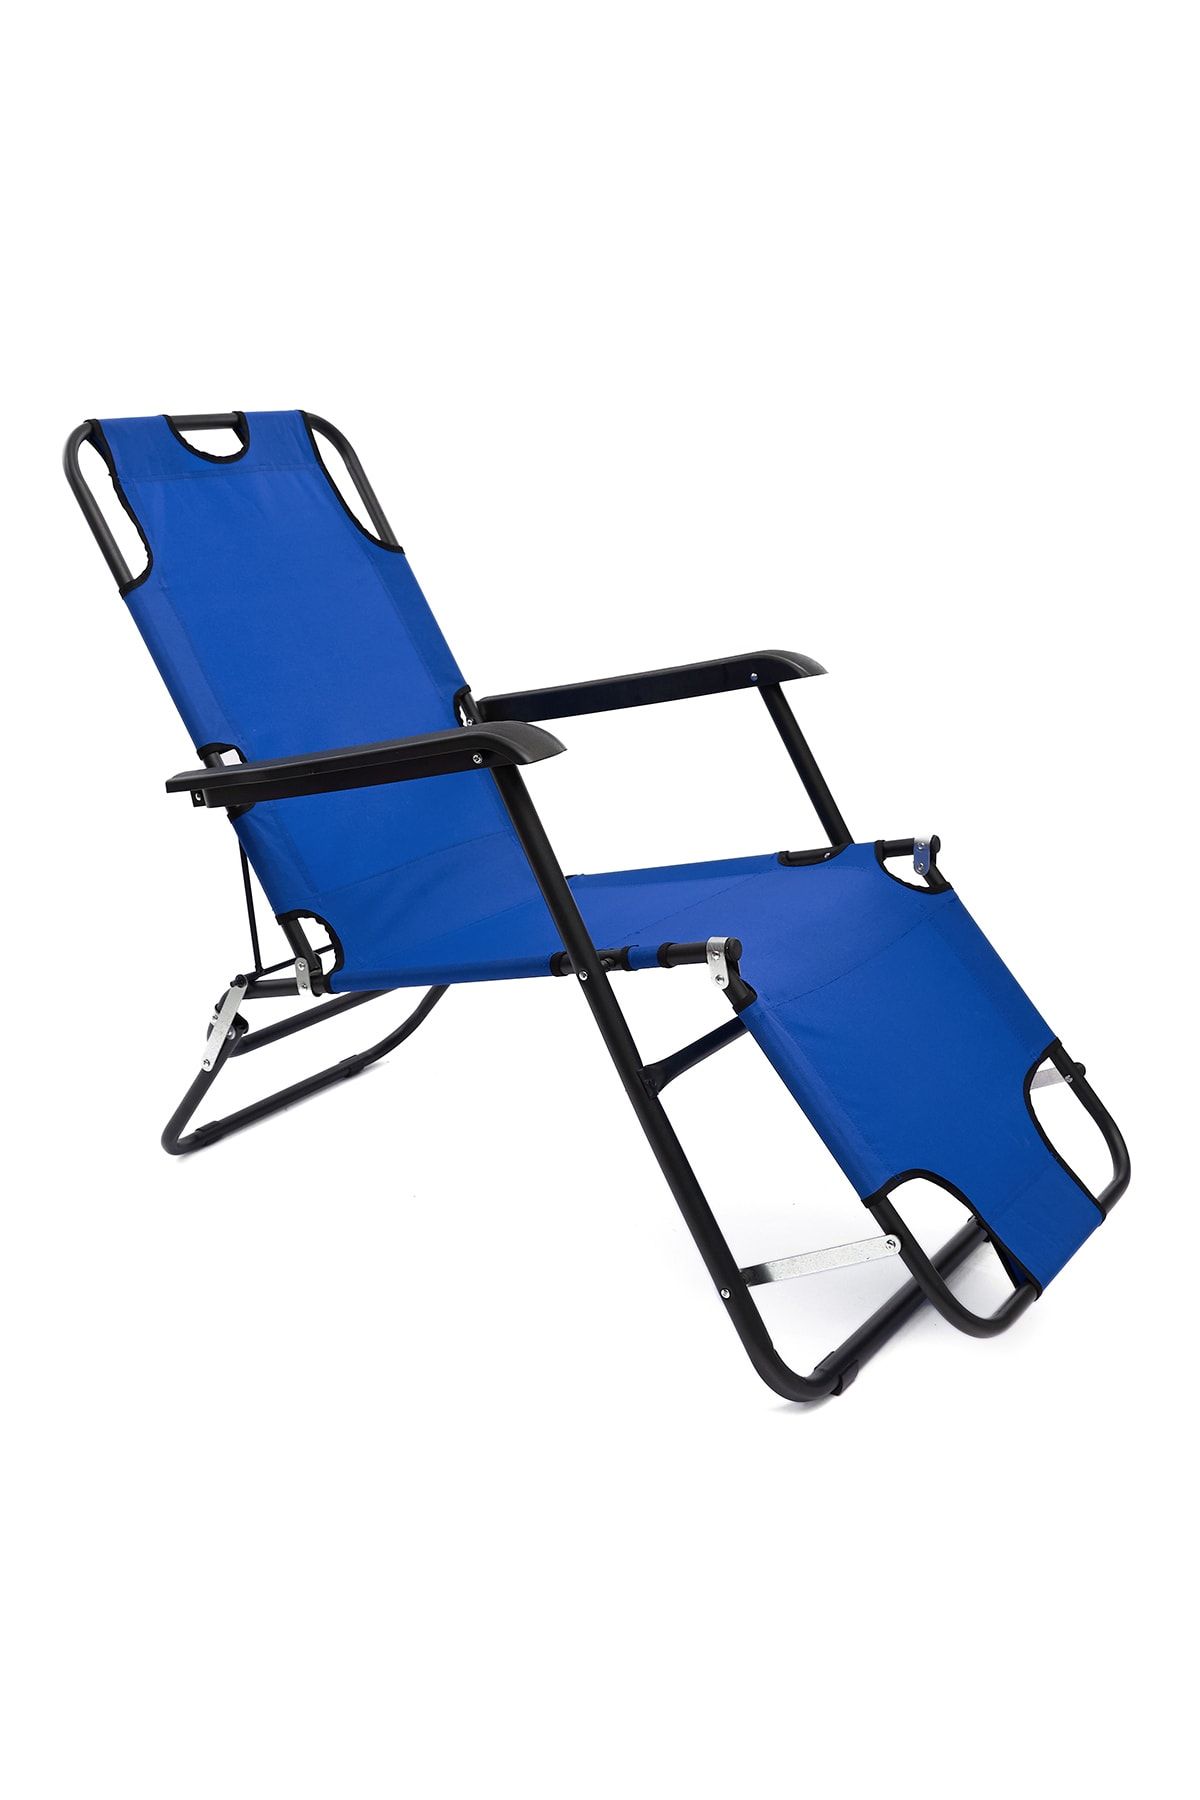 moniev Litus Katlanır Şezlong Plaj Şezlongu Portatif Kamp Sandalyesi Ve Bahçe Şezlongu - Mavi